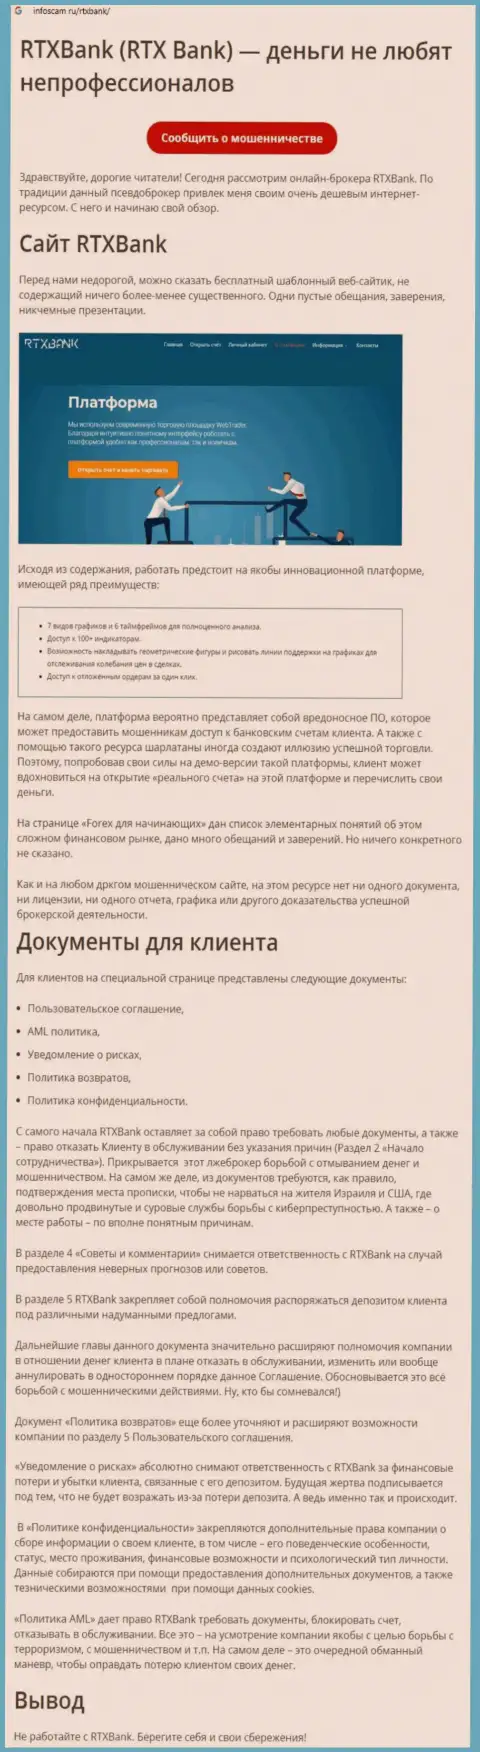 Компания RTXBank ltd - это РАЗВОДИЛЫ !!! Обзор с доказательством кидалова